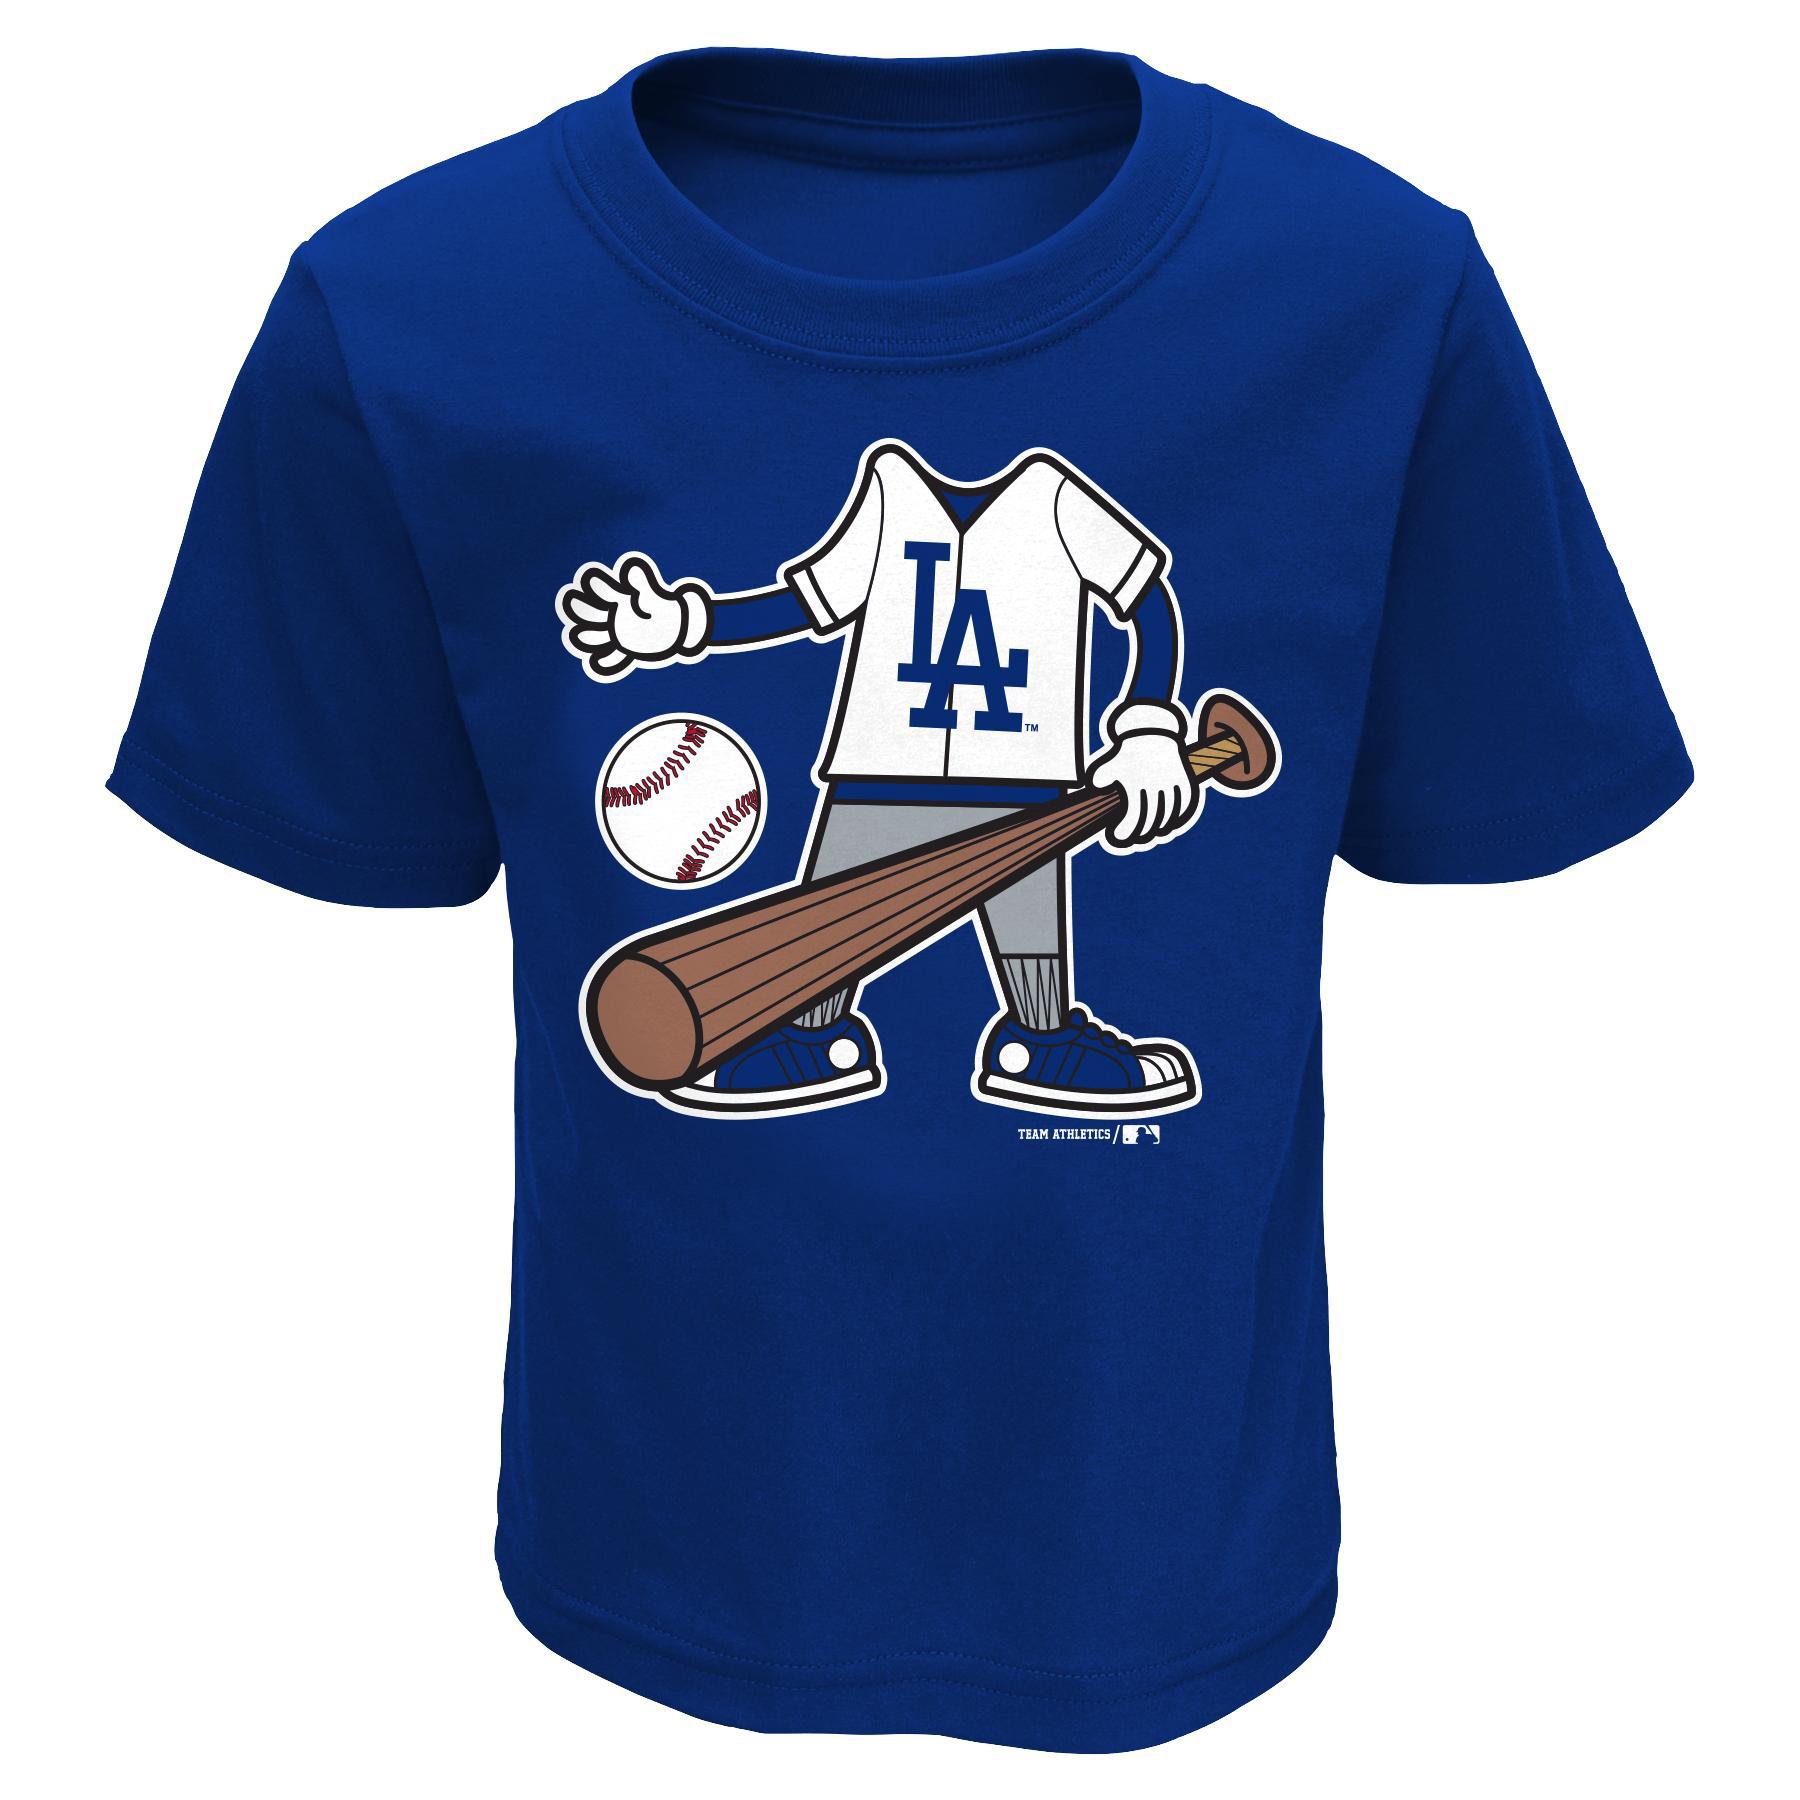 MLB Infant & Toddler Boy's T-Shirt - L.A. Dodgers